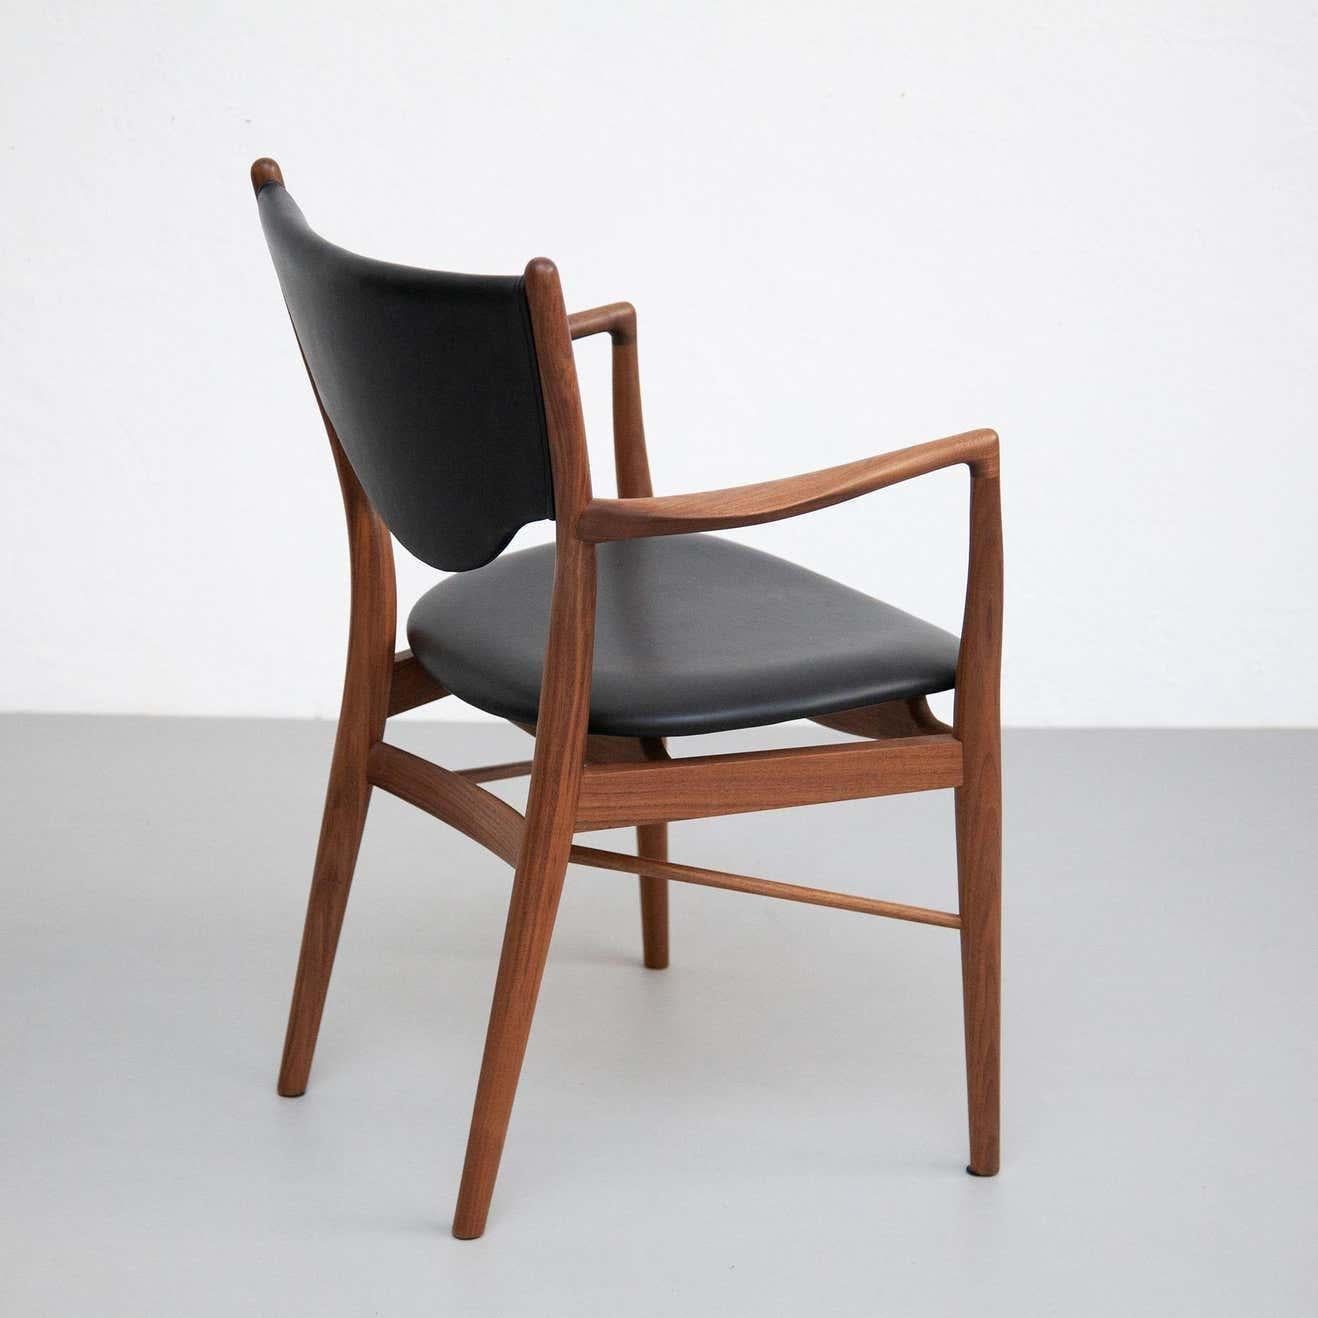 Dieser Finn Juhl Modell Scandinavian Modern 46 Sessel ist ein wahres Meisterwerk des dänischen Designs. Dieser Stuhl, der 1946 für die Ausstellung der Copenhagen Cabinetmakers' Guild für den Tischlermeister Niels Vodder entworfen wurde, ist ein